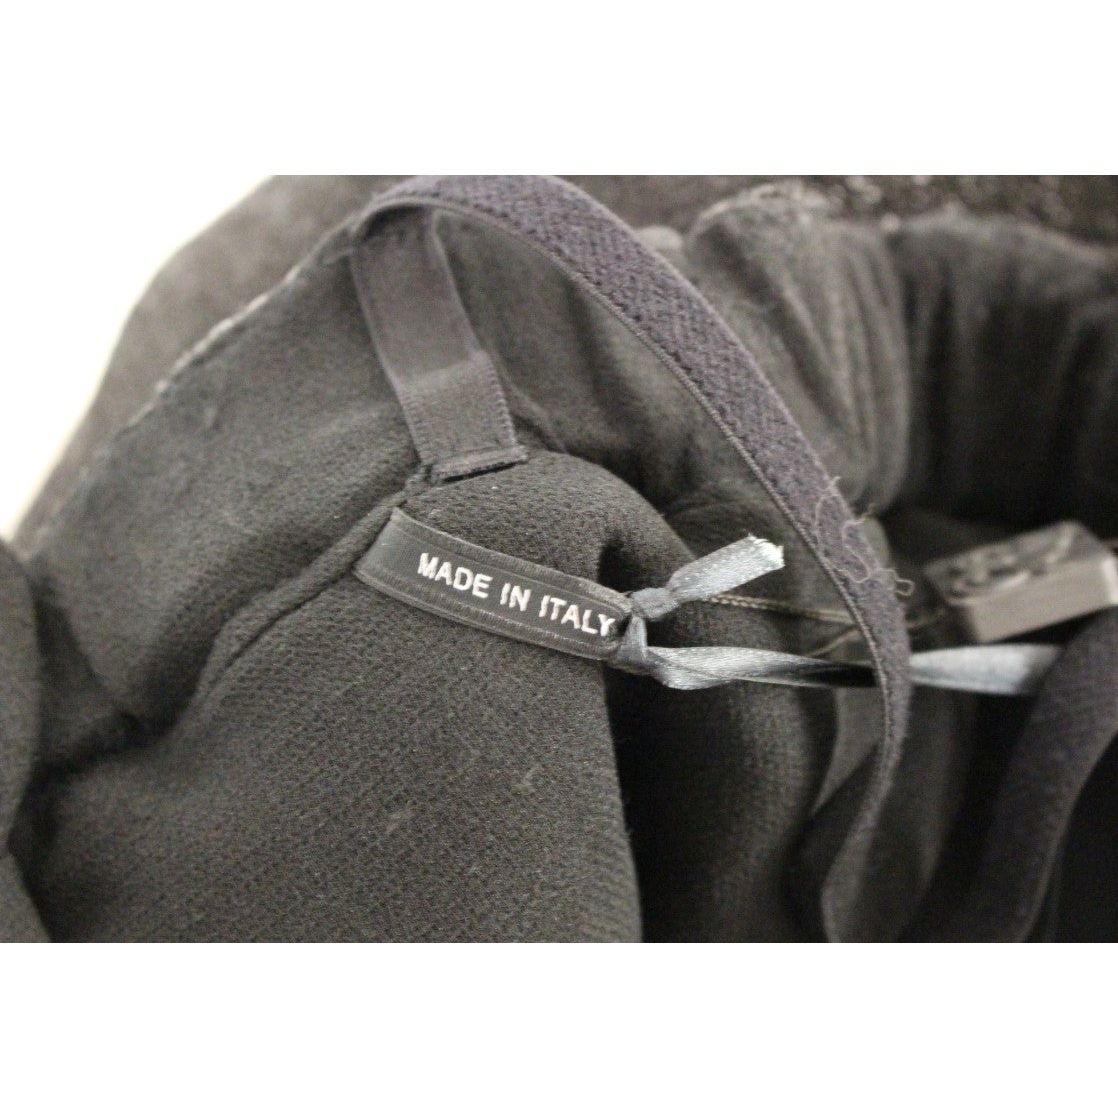 La Maison du Couturier | Elegant Black Leather Jumpsuit with Waist Strap| McRichard Designer Brands   